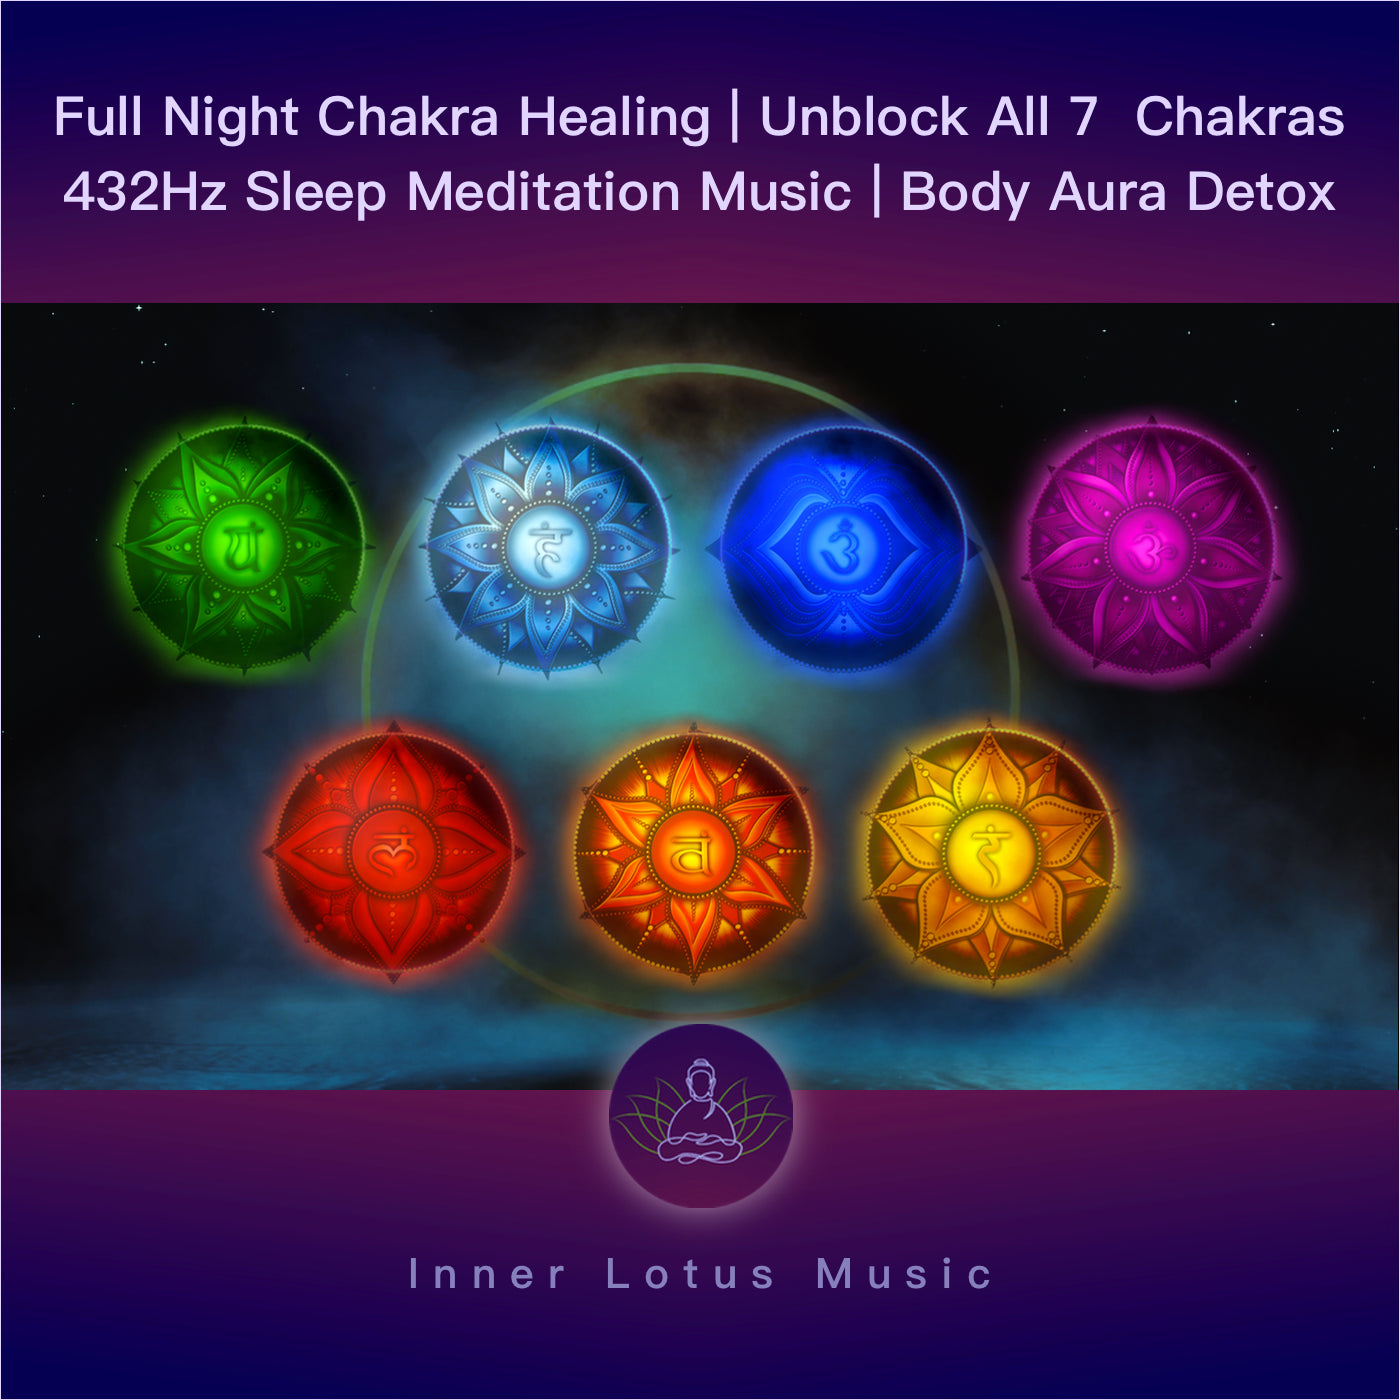 Desbloquea Tus 7 Chakras | Apertura y Sanación Chakra | Música Curativa 432 Hz Meditación y Sueño